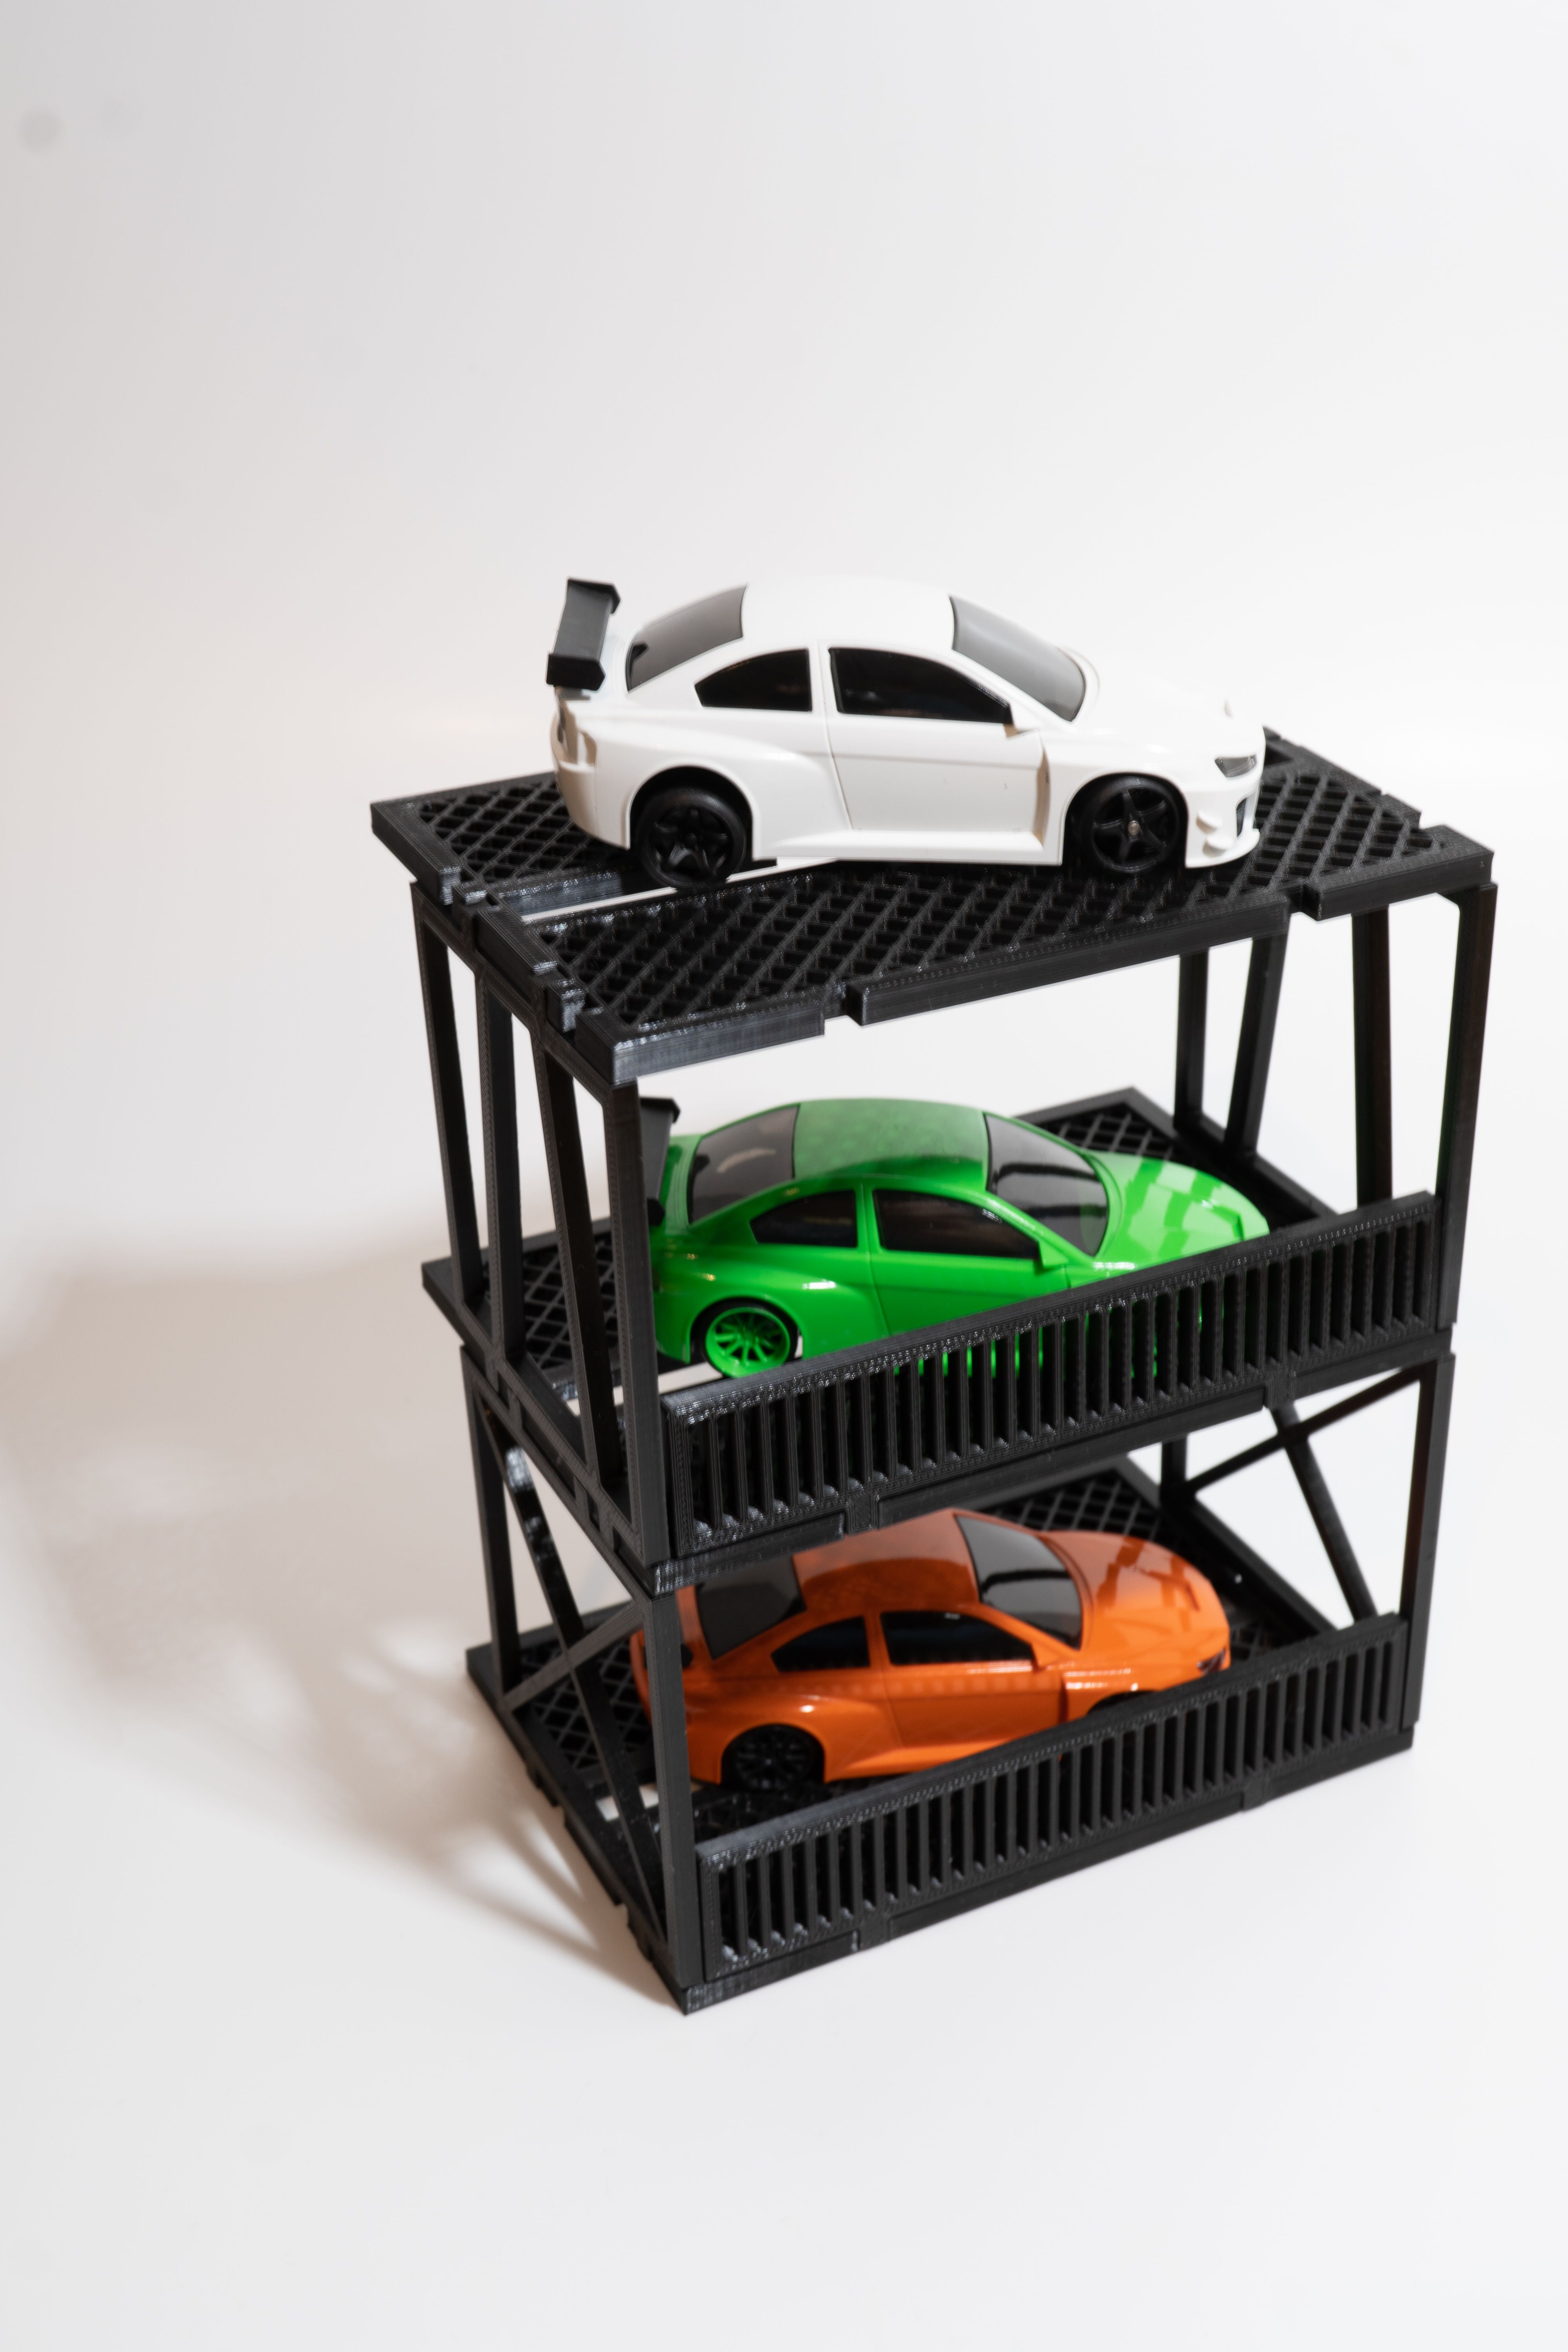 DSC08309-1.jpg Download STL file Car Port Garage Scale 143 Dr!ft Racer Storm Child Diorama • 3D printable model, drift_pica